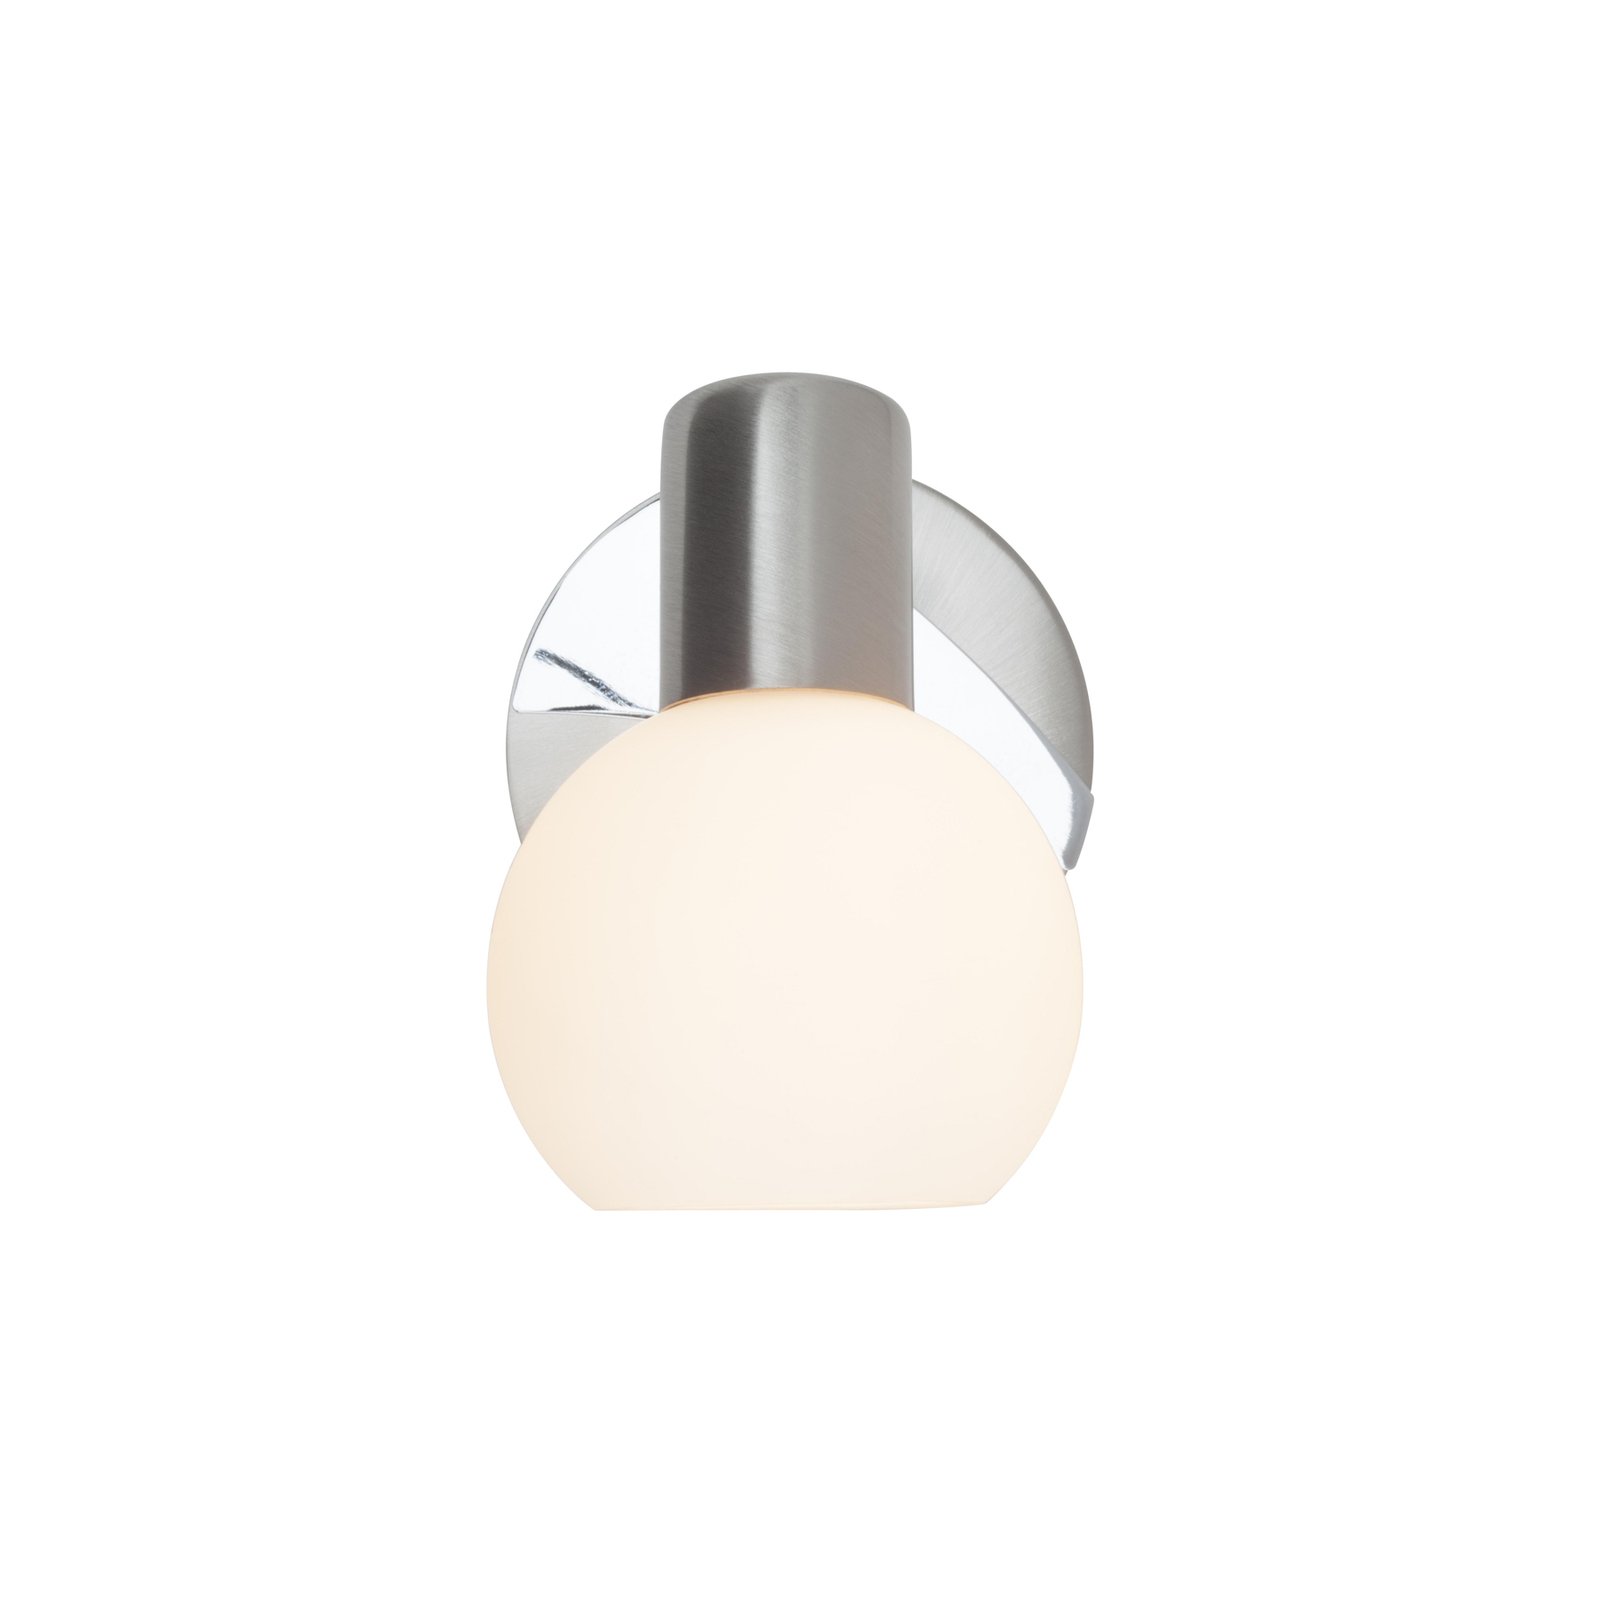 Reflektor ścienny Tiara, żelazo/biały, Ø 11 cm, metal/szkło